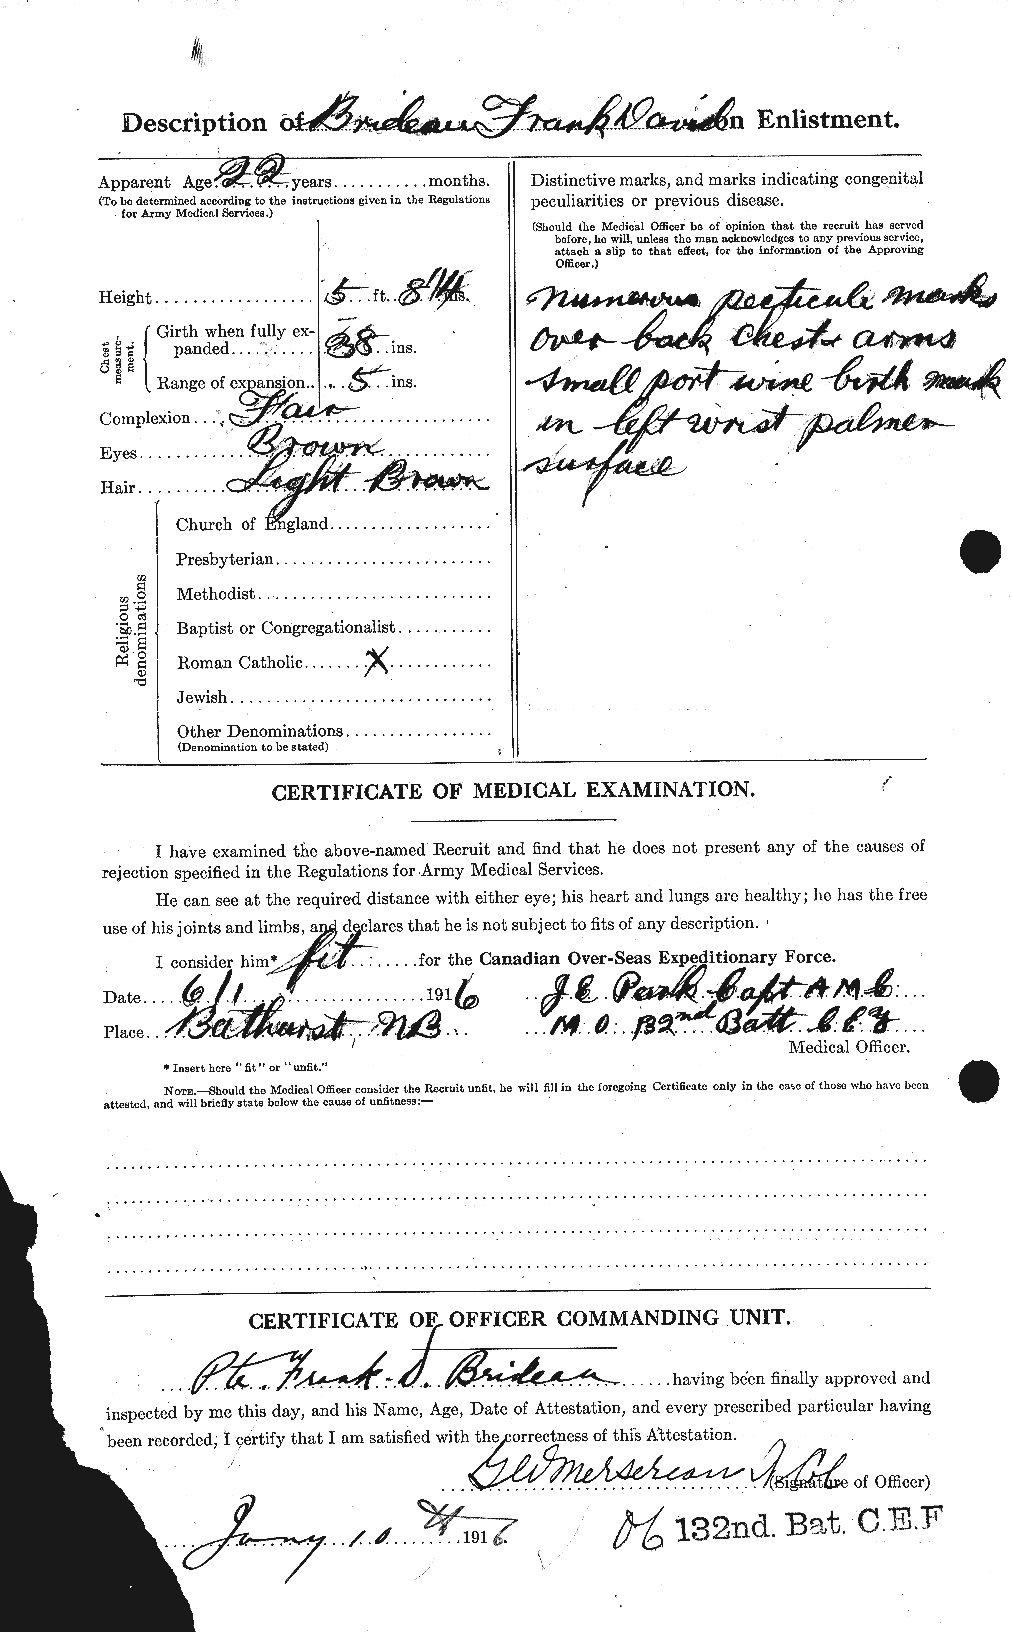 Dossiers du Personnel de la Première Guerre mondiale - CEC 261259b